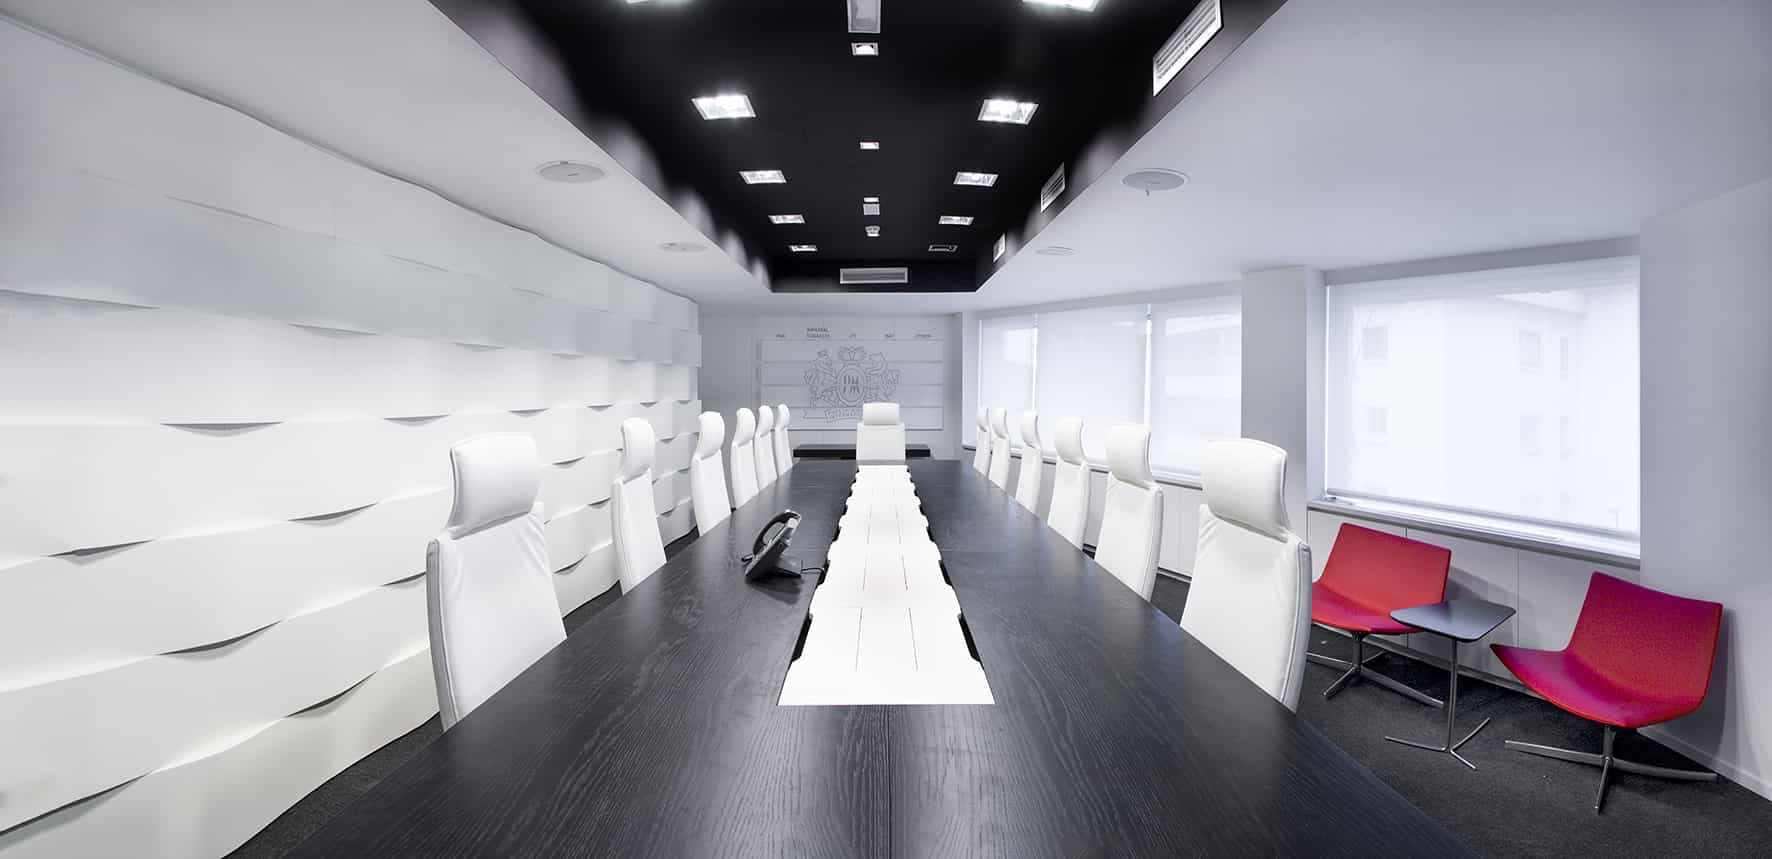 Philip Morris_Galería_zona de reuniones de carácter formal e informal con mobiliario estándar, mesa de trabajo